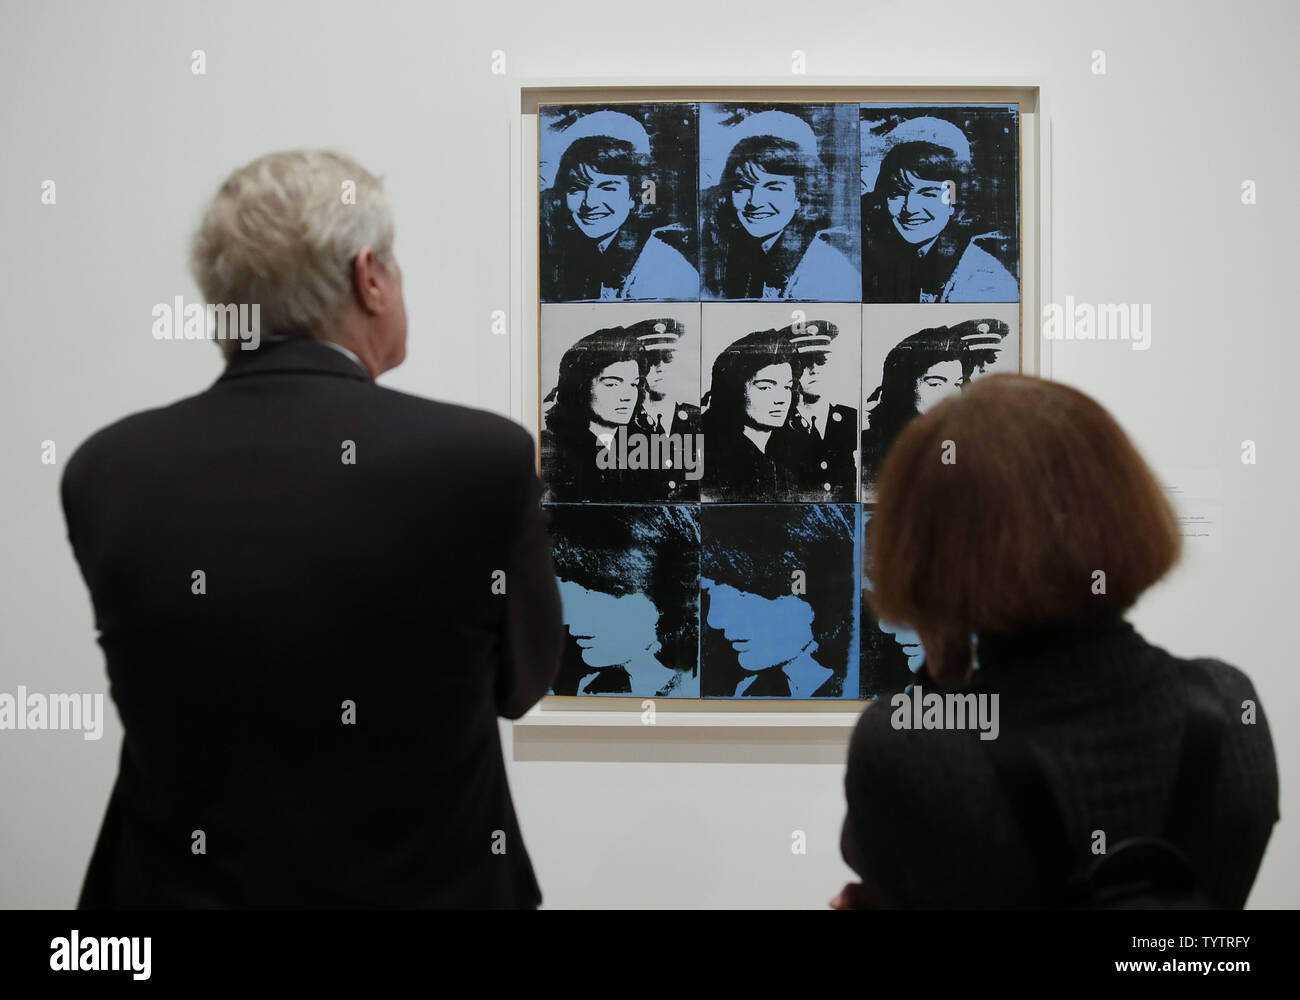 Menschen stehen unter Werke von Andy Warhol auf die Vorschau für die kommende Ausstellung "Andy Warhol - von A nach B und wieder zurück" am Whitney Museum der amerikanischen Kunst in New York City am 10. November 2018. Andy Warhol - von A nach B und wieder öffnet, die der Öffentlichkeit am 12. November und läuft bis zum 31. März 2019 Foto von John angelillo/UPI Stockfoto